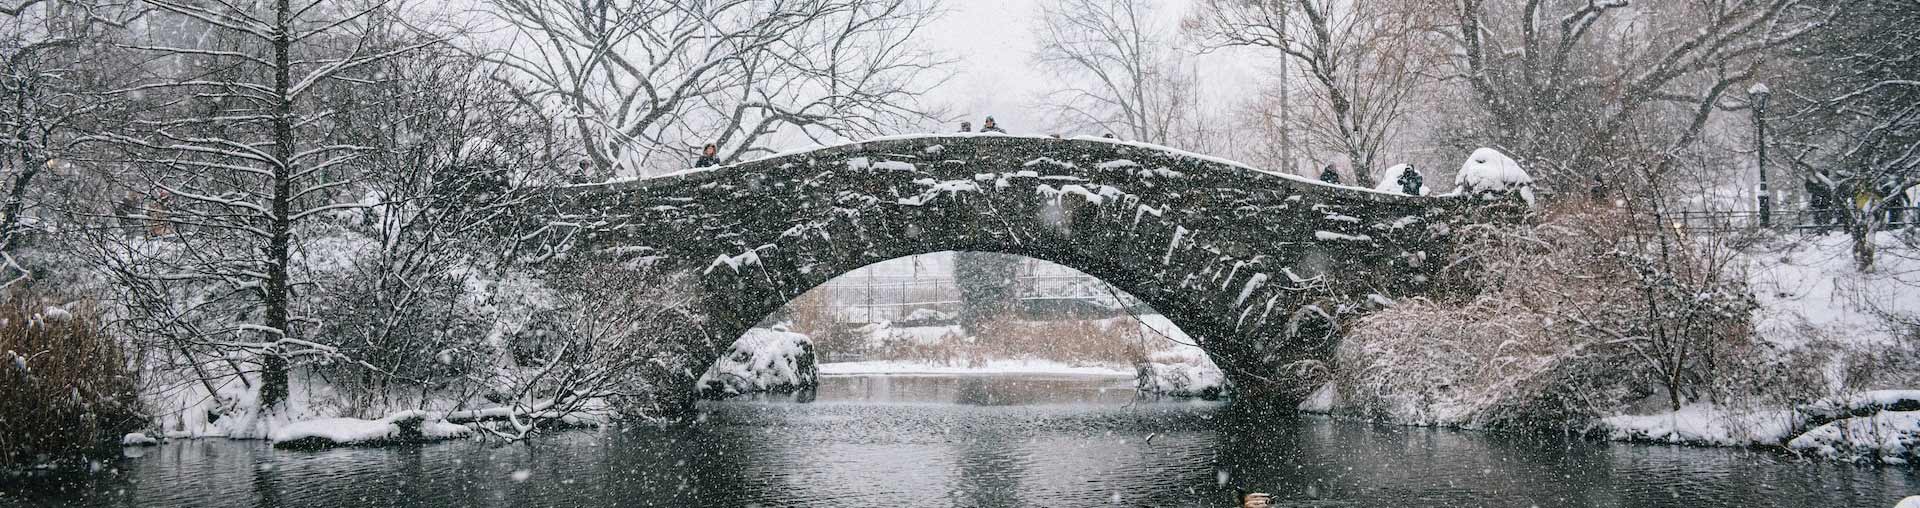 Central Park de Nueva York nevando con un puente de piedra al fondo